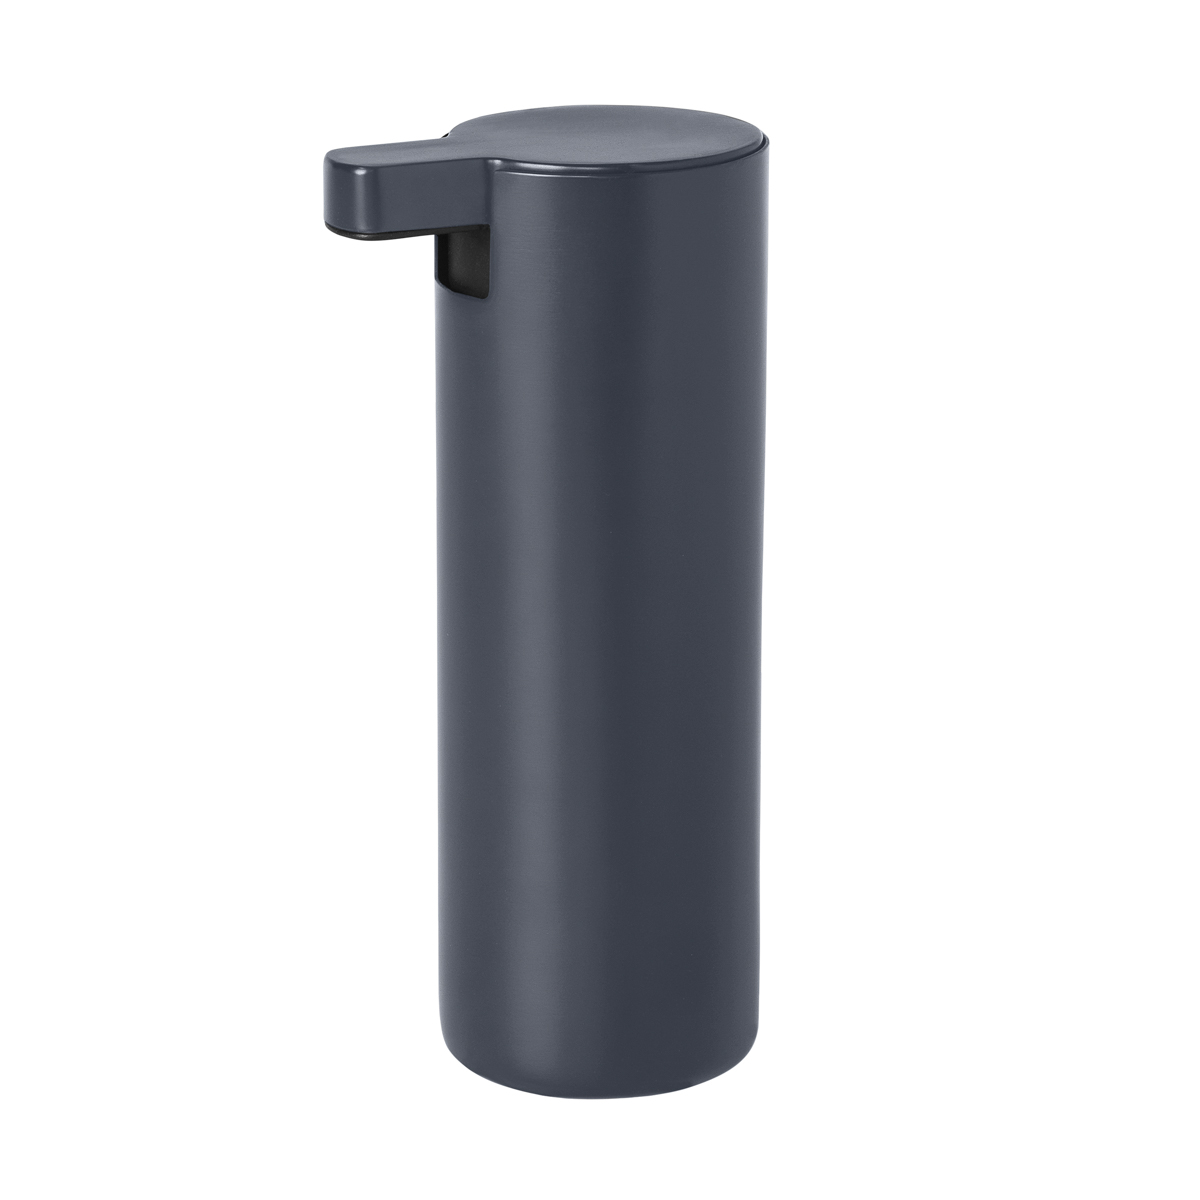 Seifenspender - MODO - Magnet 165 ml, Ø 5,5 cm. Material: Stahl titanbeschichtet, Gummi, Kunststoff. Von Blomus.